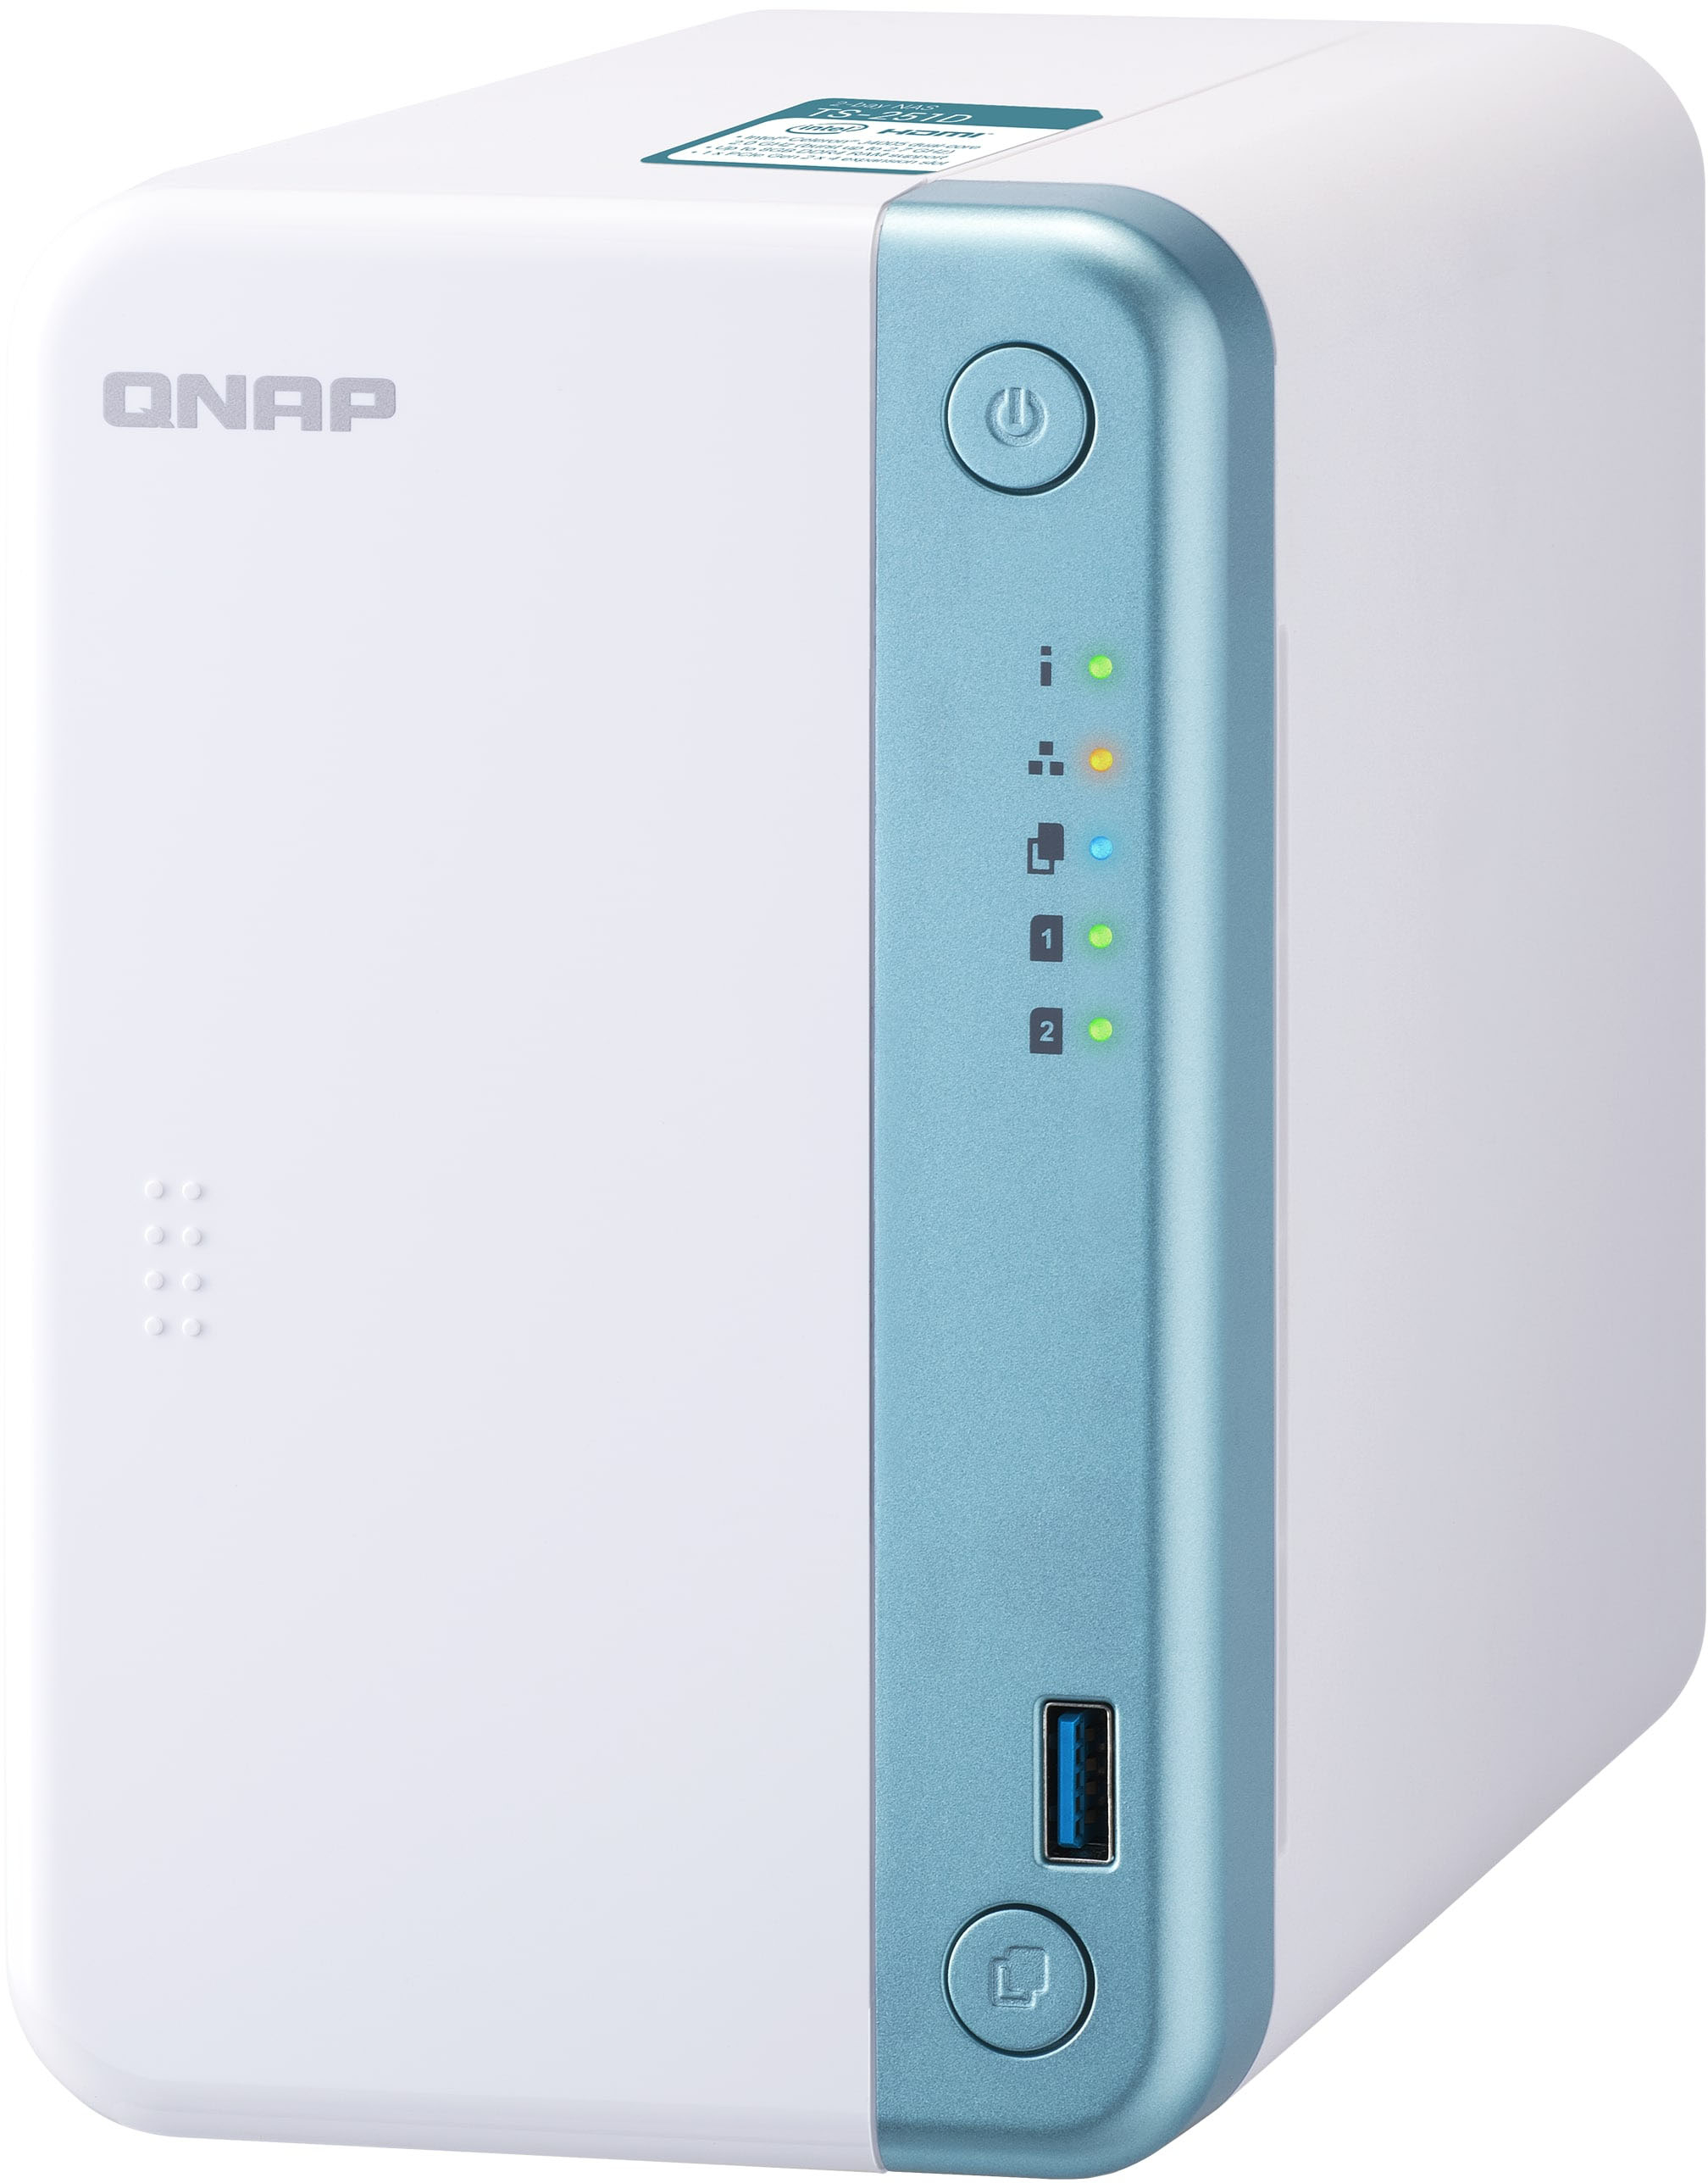 Angle View: QNAP - TS-251D-4G 2-Bay, Intel Celeron Apollo Lake J3355, 4GB DDR3L RAM, External Network Attached Storage (NAS) - White